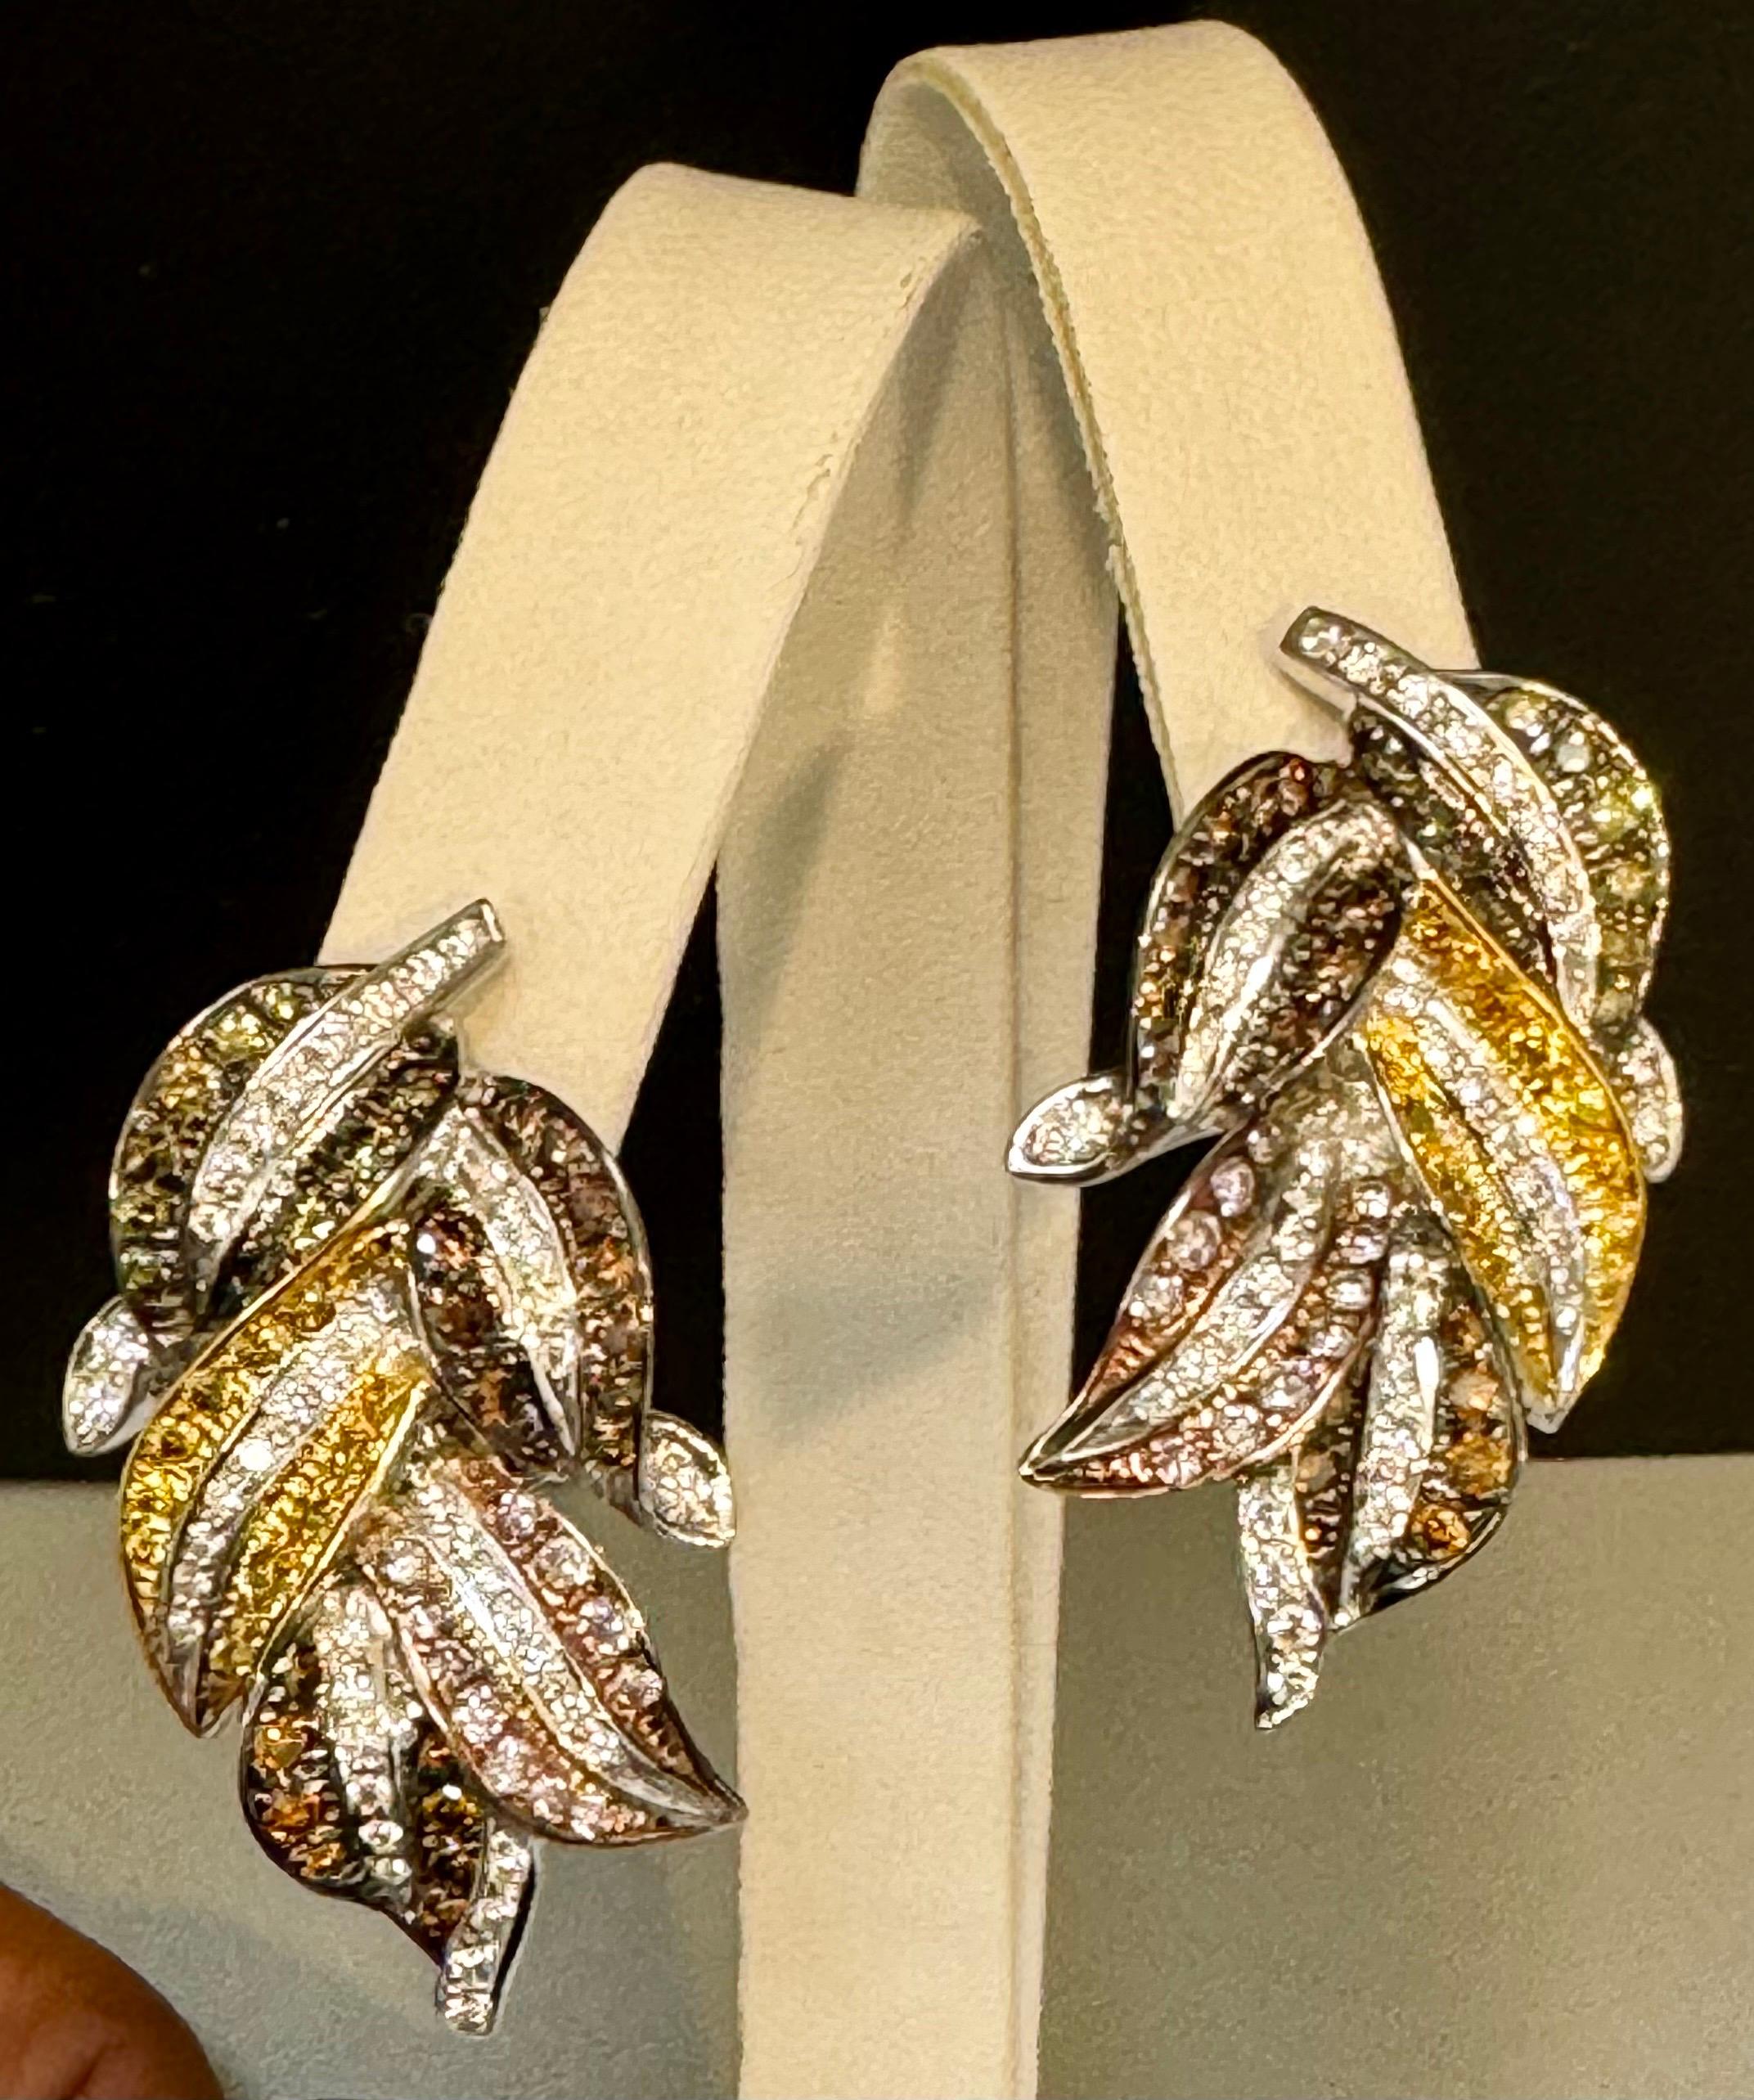 4 Karat Natürliche Fancy Color Diamant Blume Ohrringe in 18 Kt Multi Color Gold
Diese exquisiten Ohrringe sind mit ca. 4 Karat natürlichen Fancy-Diamanten besetzt, die in einem wunderschönen Blattmuster in 18 Karat Multicolor-Gold angeordnet sind,